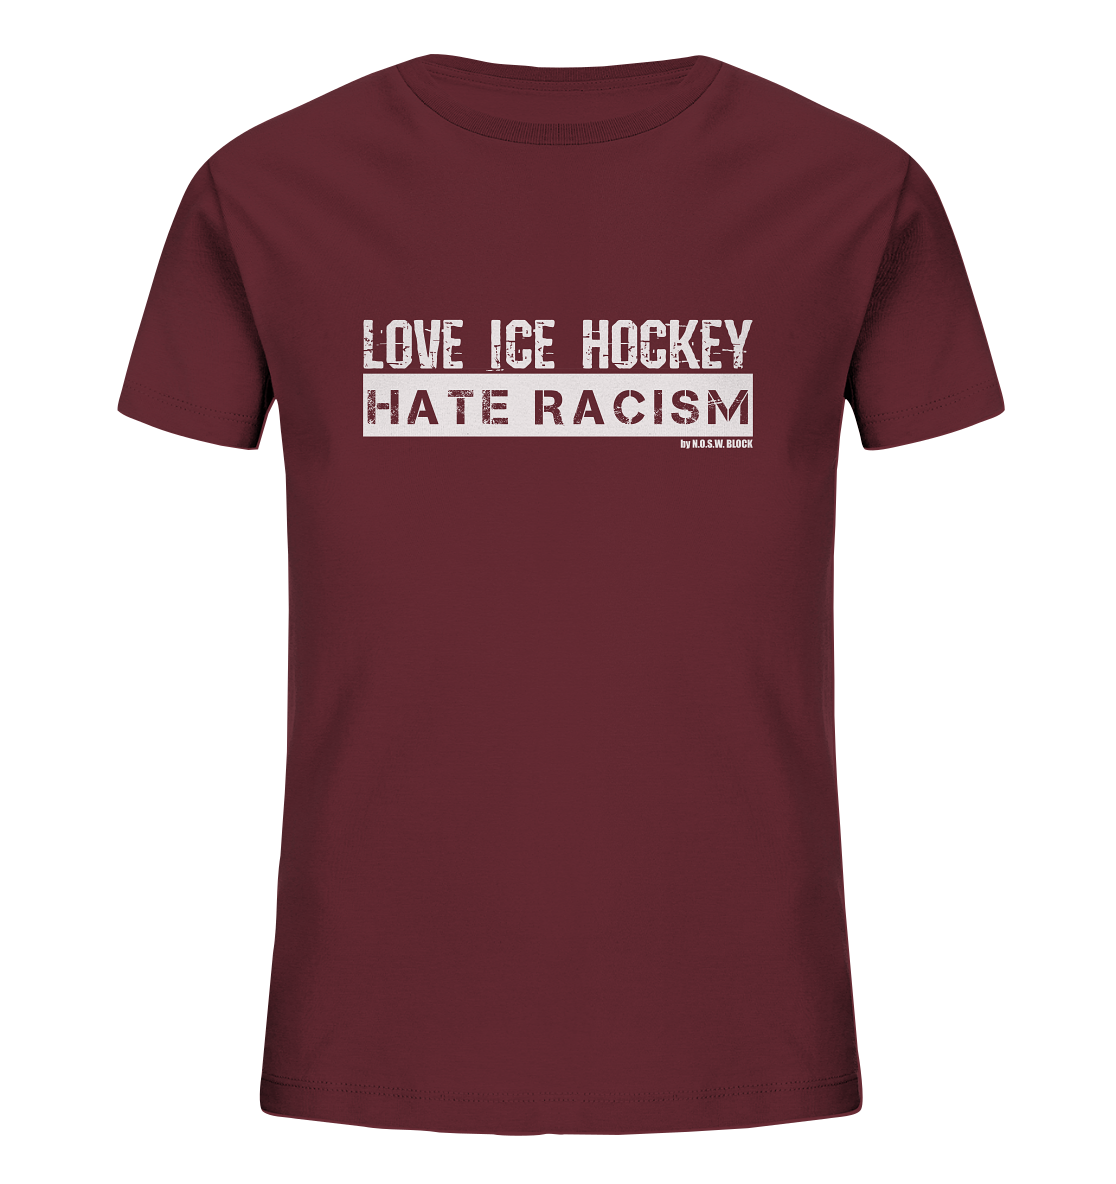 N.O.S.W. BLOCK Gegen Rechts Shirt "LOVE ICE HOCKEY HATE RACISM" Kids UNISEX Organic T-Shirt weinrot